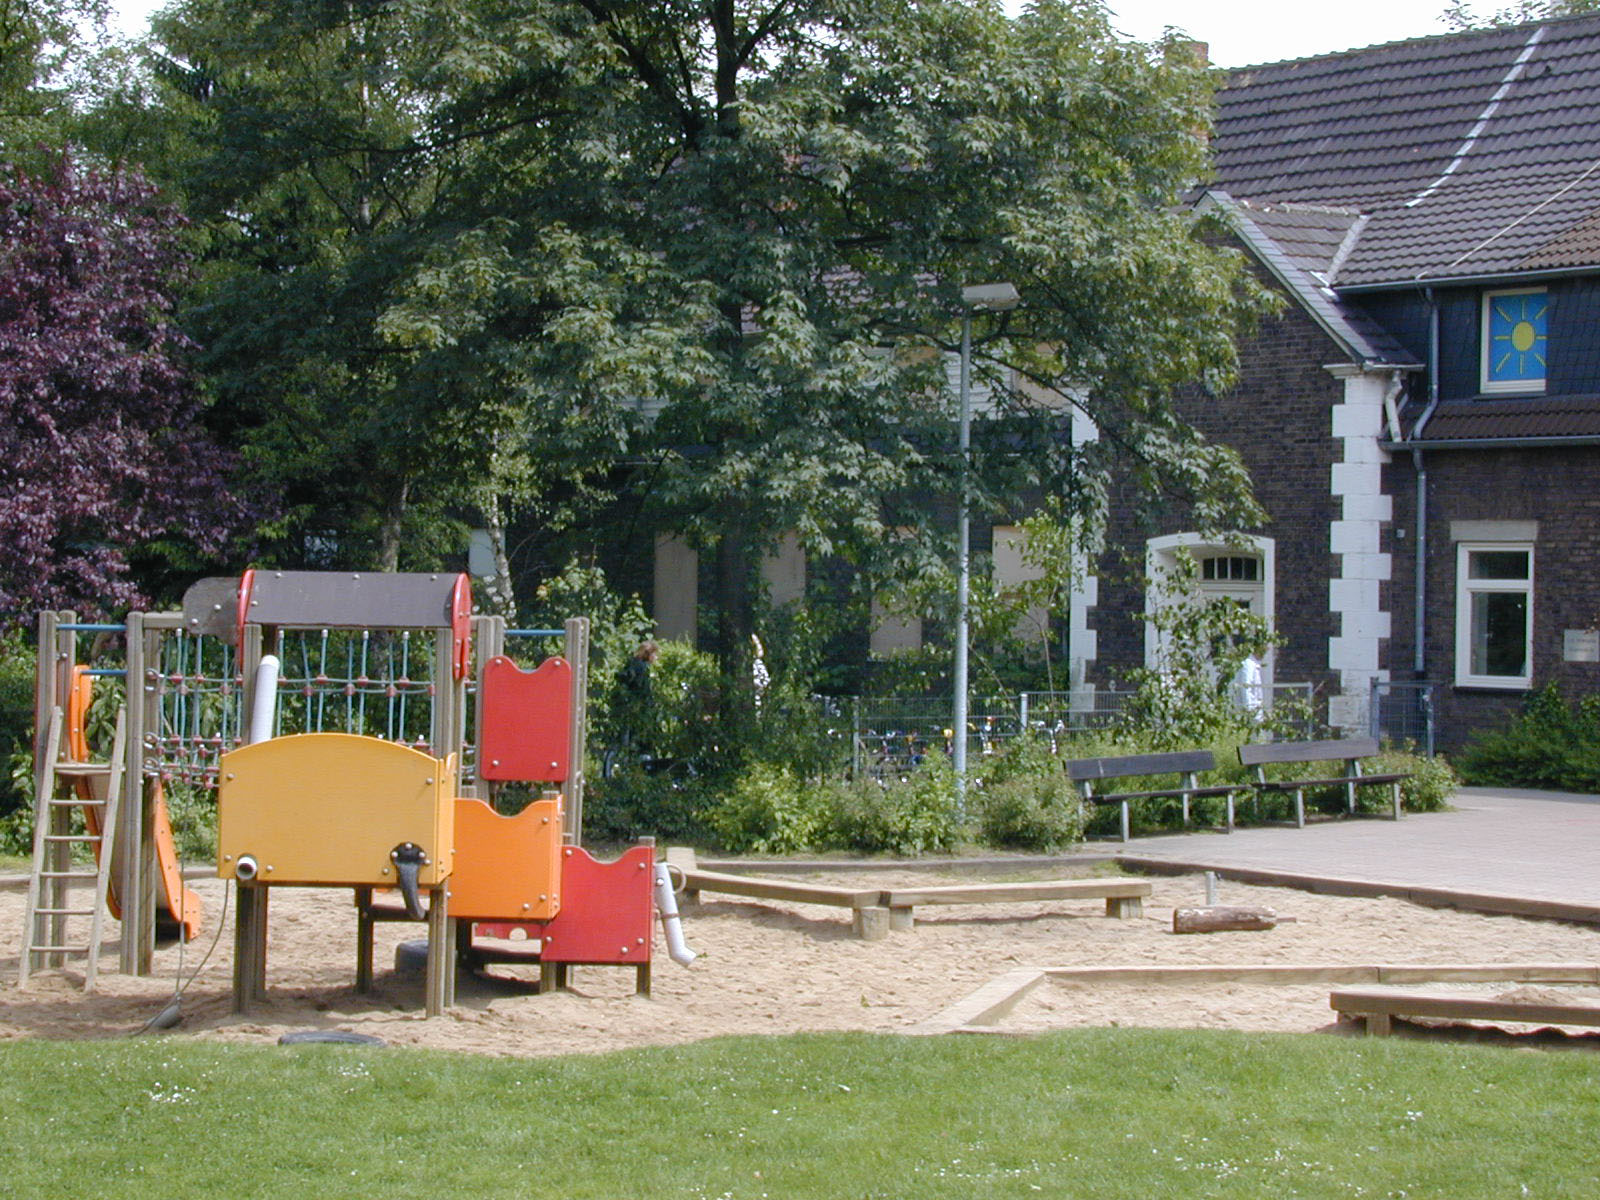 Klettergerüst und Sandspielbereich im Außenspielbereich der städtischen Tageseinrichtung für Kinder Körnerstraße.